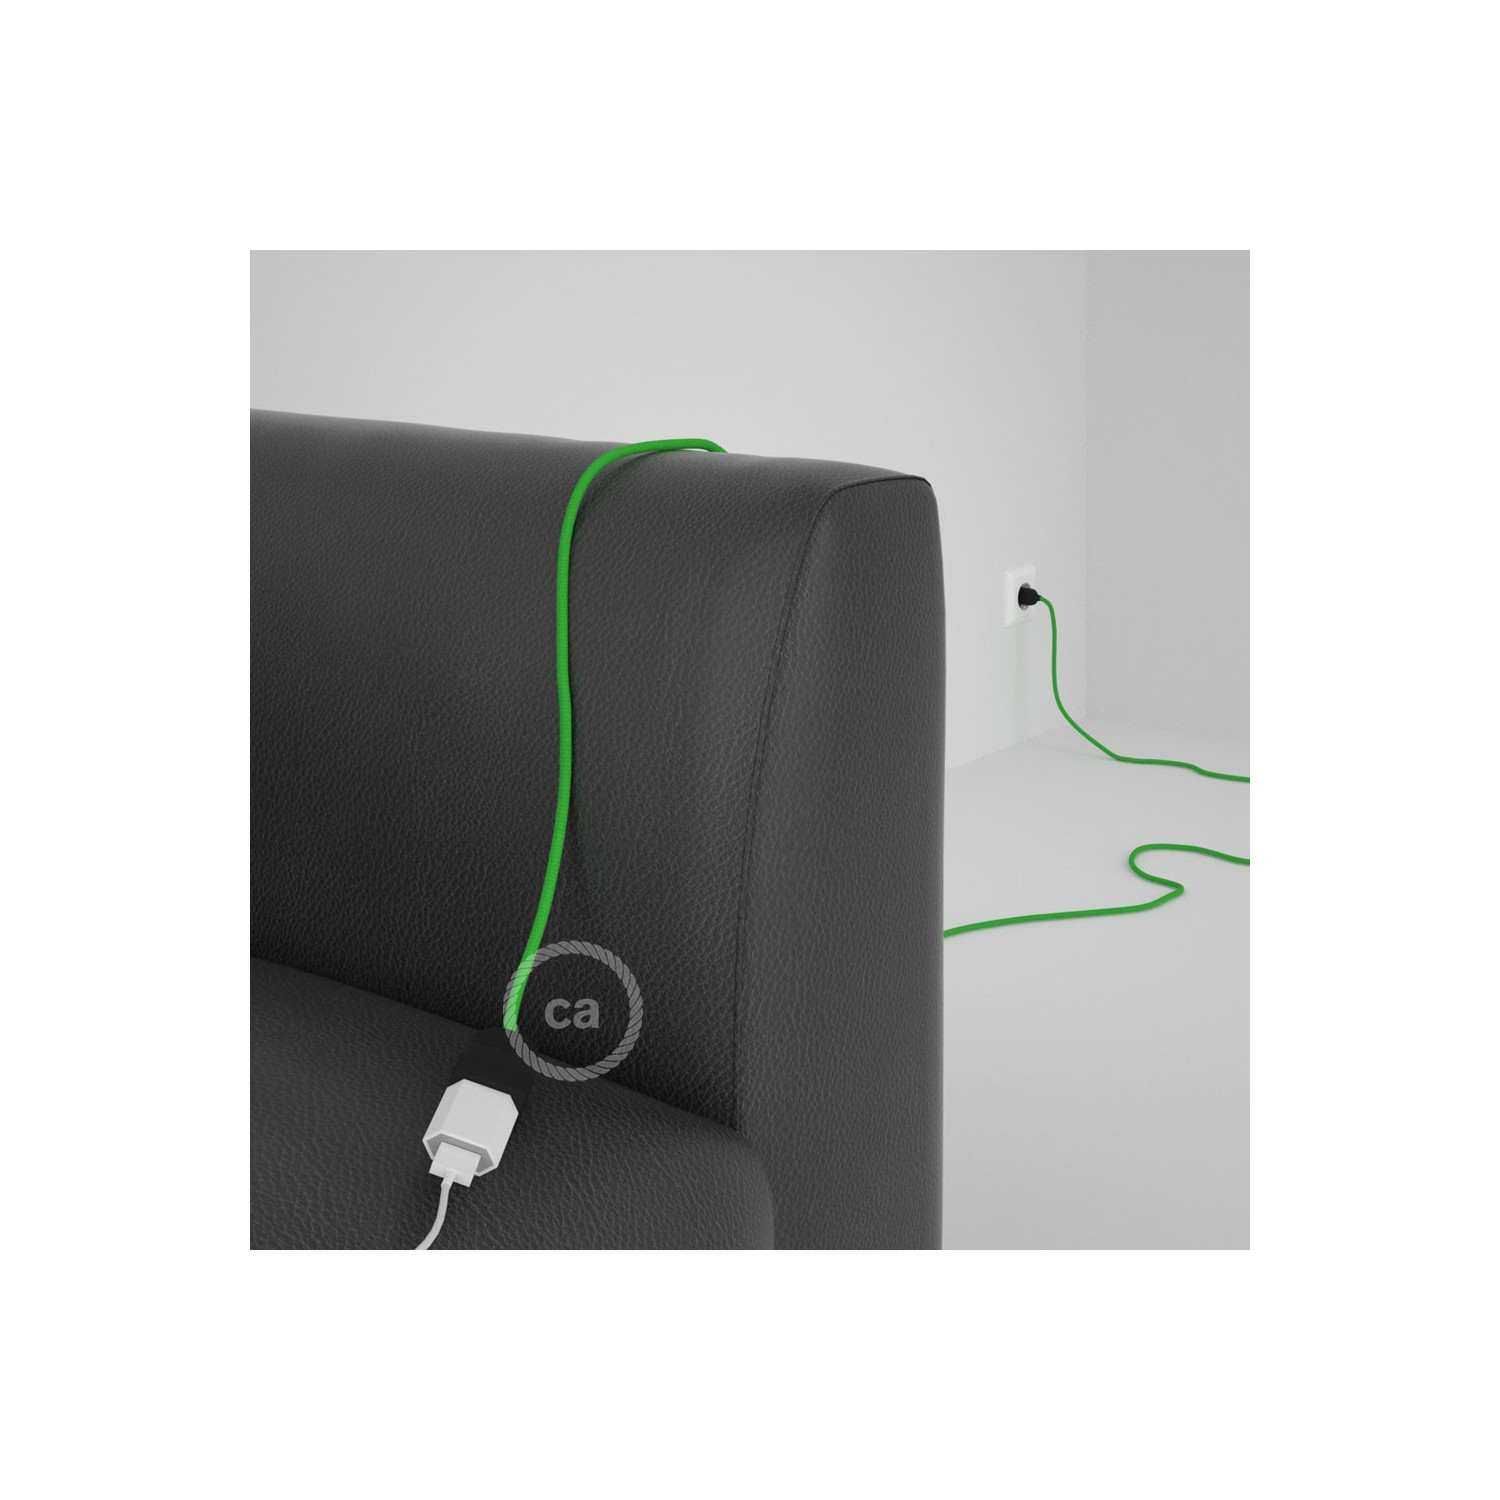 Podaljševalni kabel za napajanje (2P 10A) limeta zelen rejon RM18 - Made in Italy